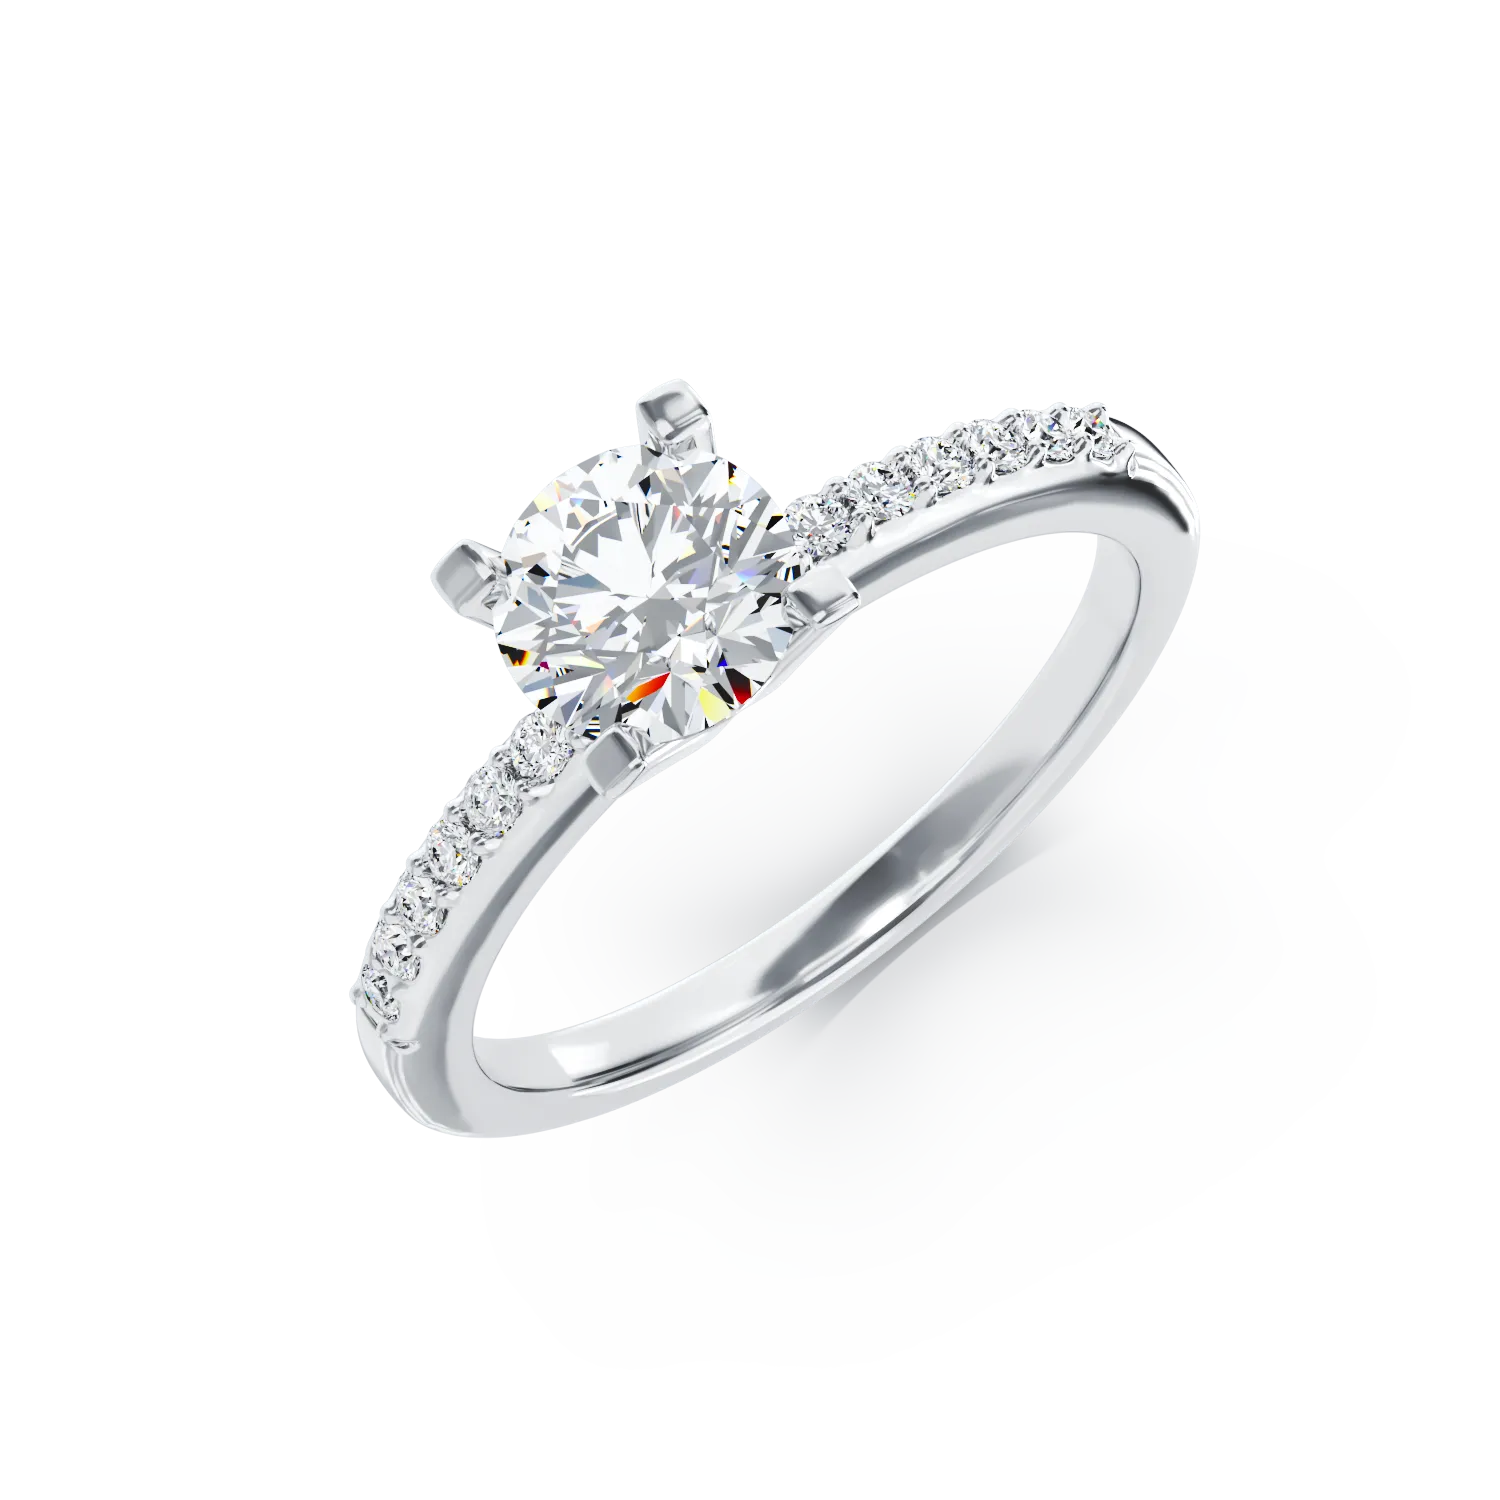 18k white gold engagement ring